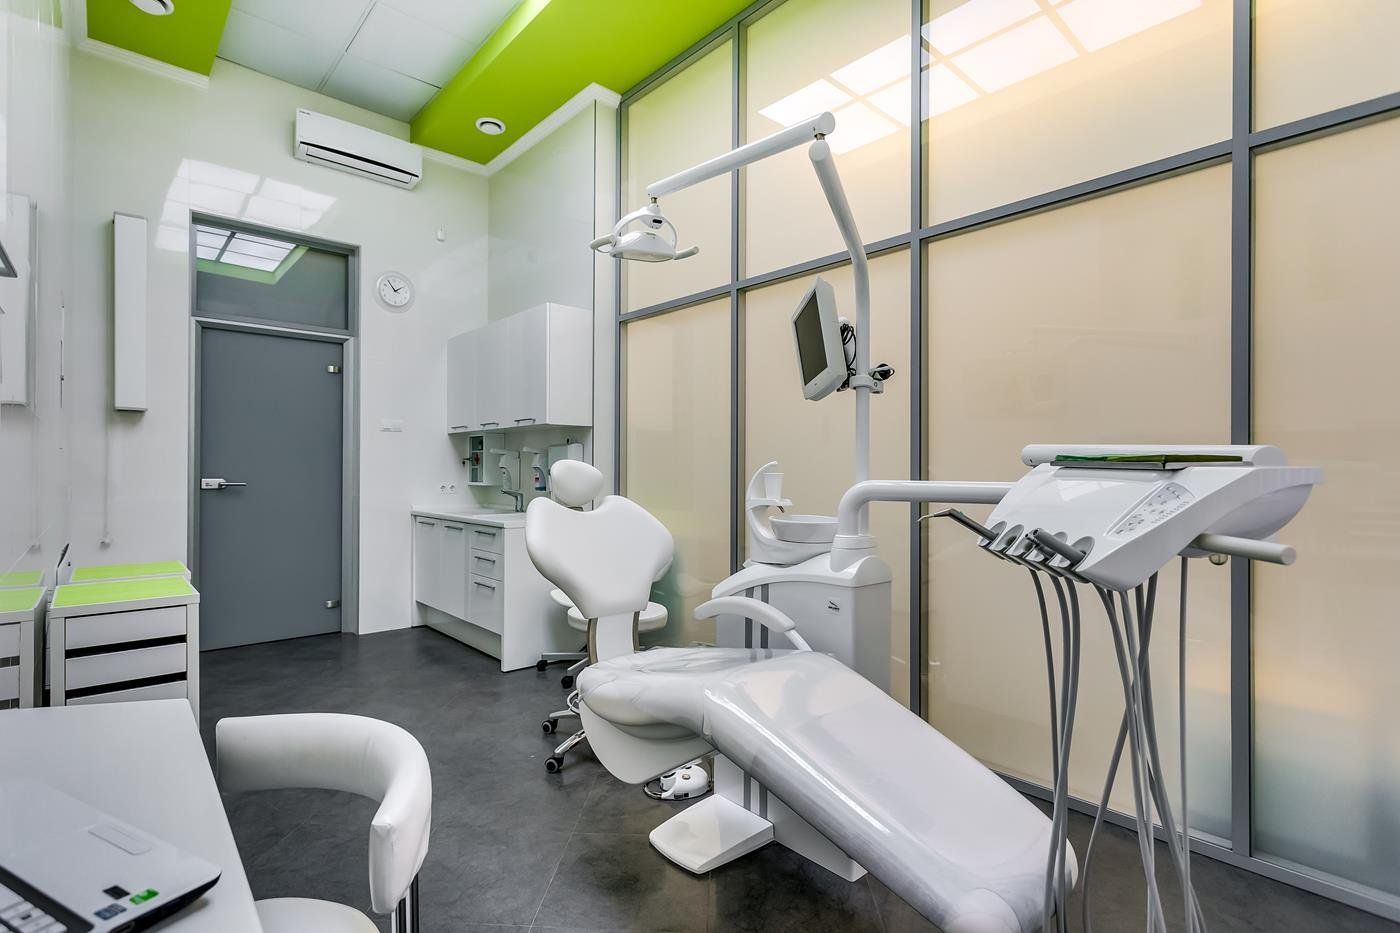 Najbolje plaćene stomatološke klinike za djecu u Nižnjem Novgorodu 2020. godine